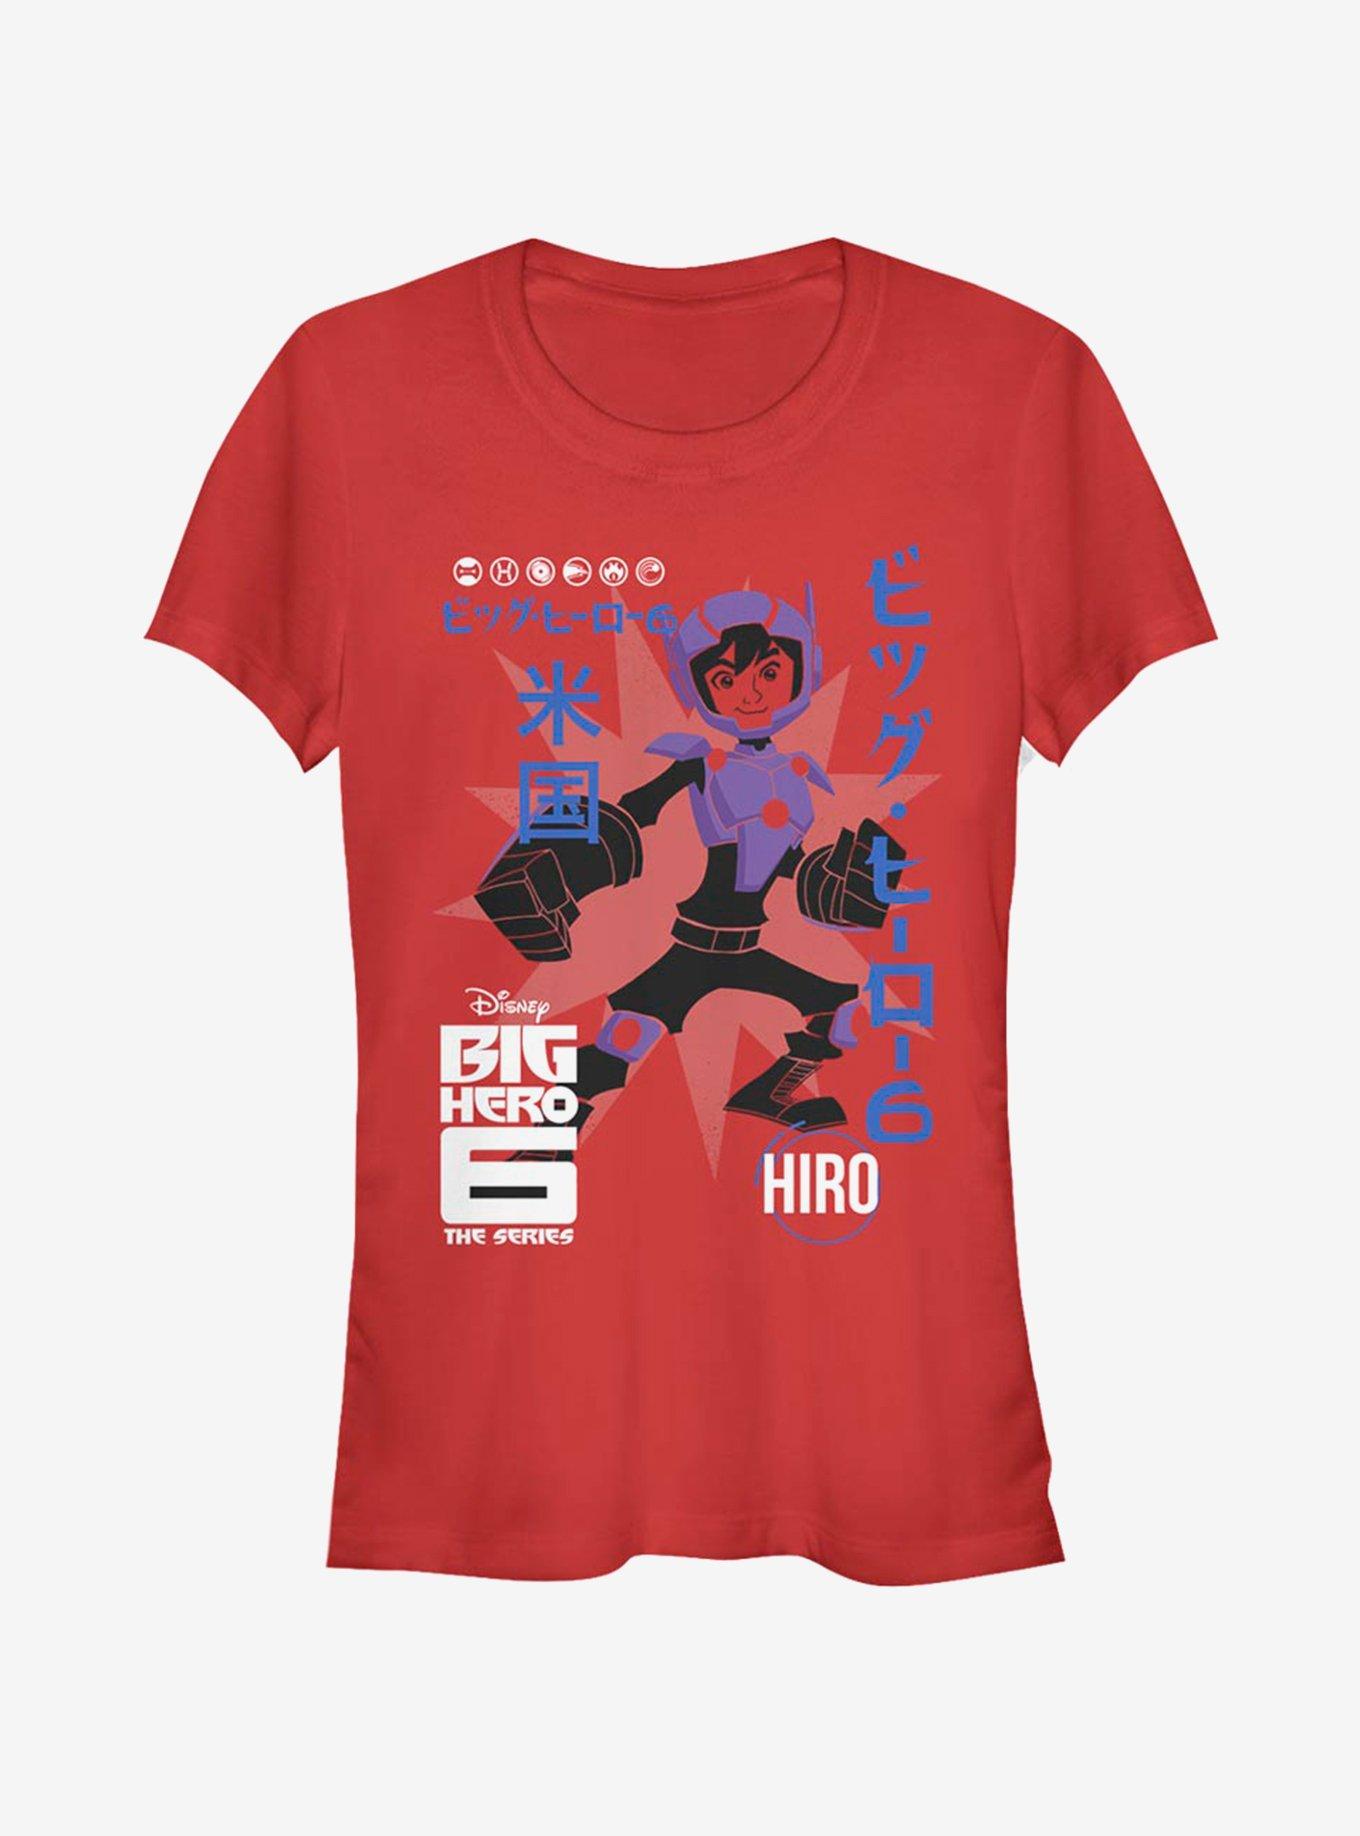 Disney Big Hero 6 Hiro Poster Girls T-Shirt, RED, hi-res